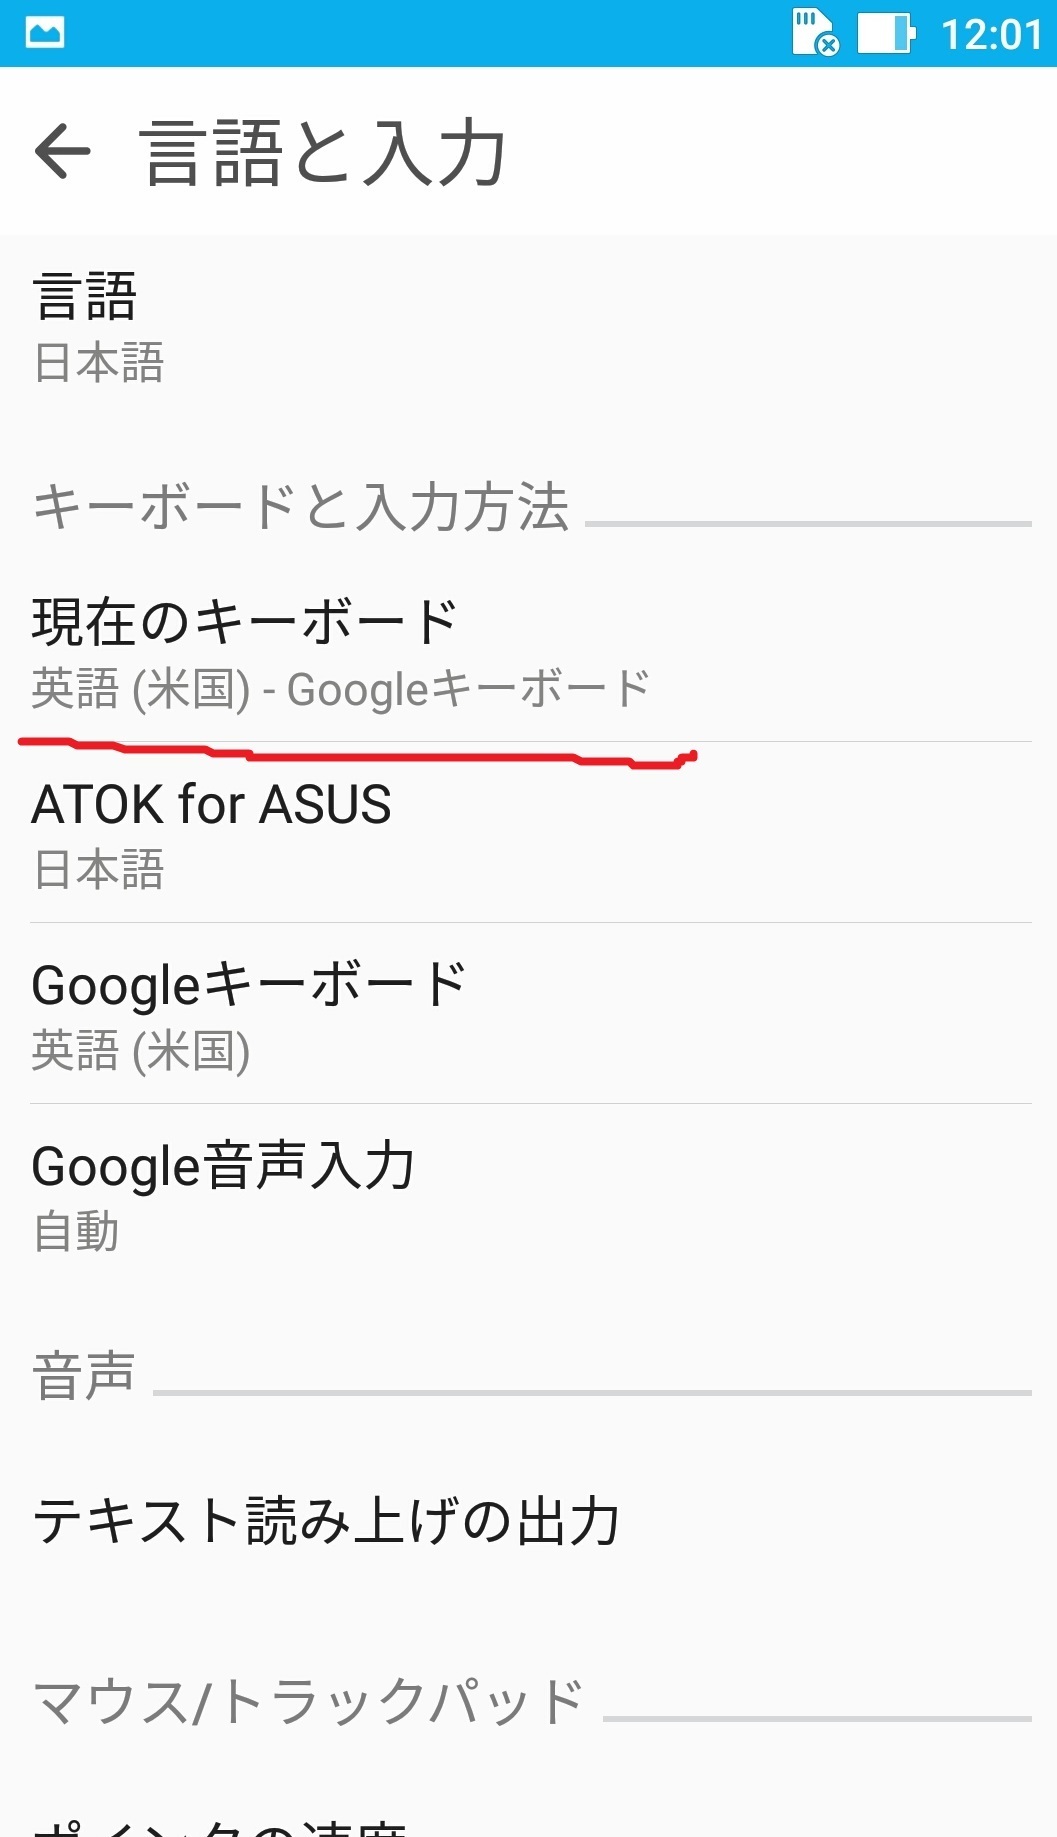 Asus Zenfone3スマホ キーボード設定を確認 日本語入力 英語 Simフリースマホ Asus Zenfone3使い方 設定をレビューとして